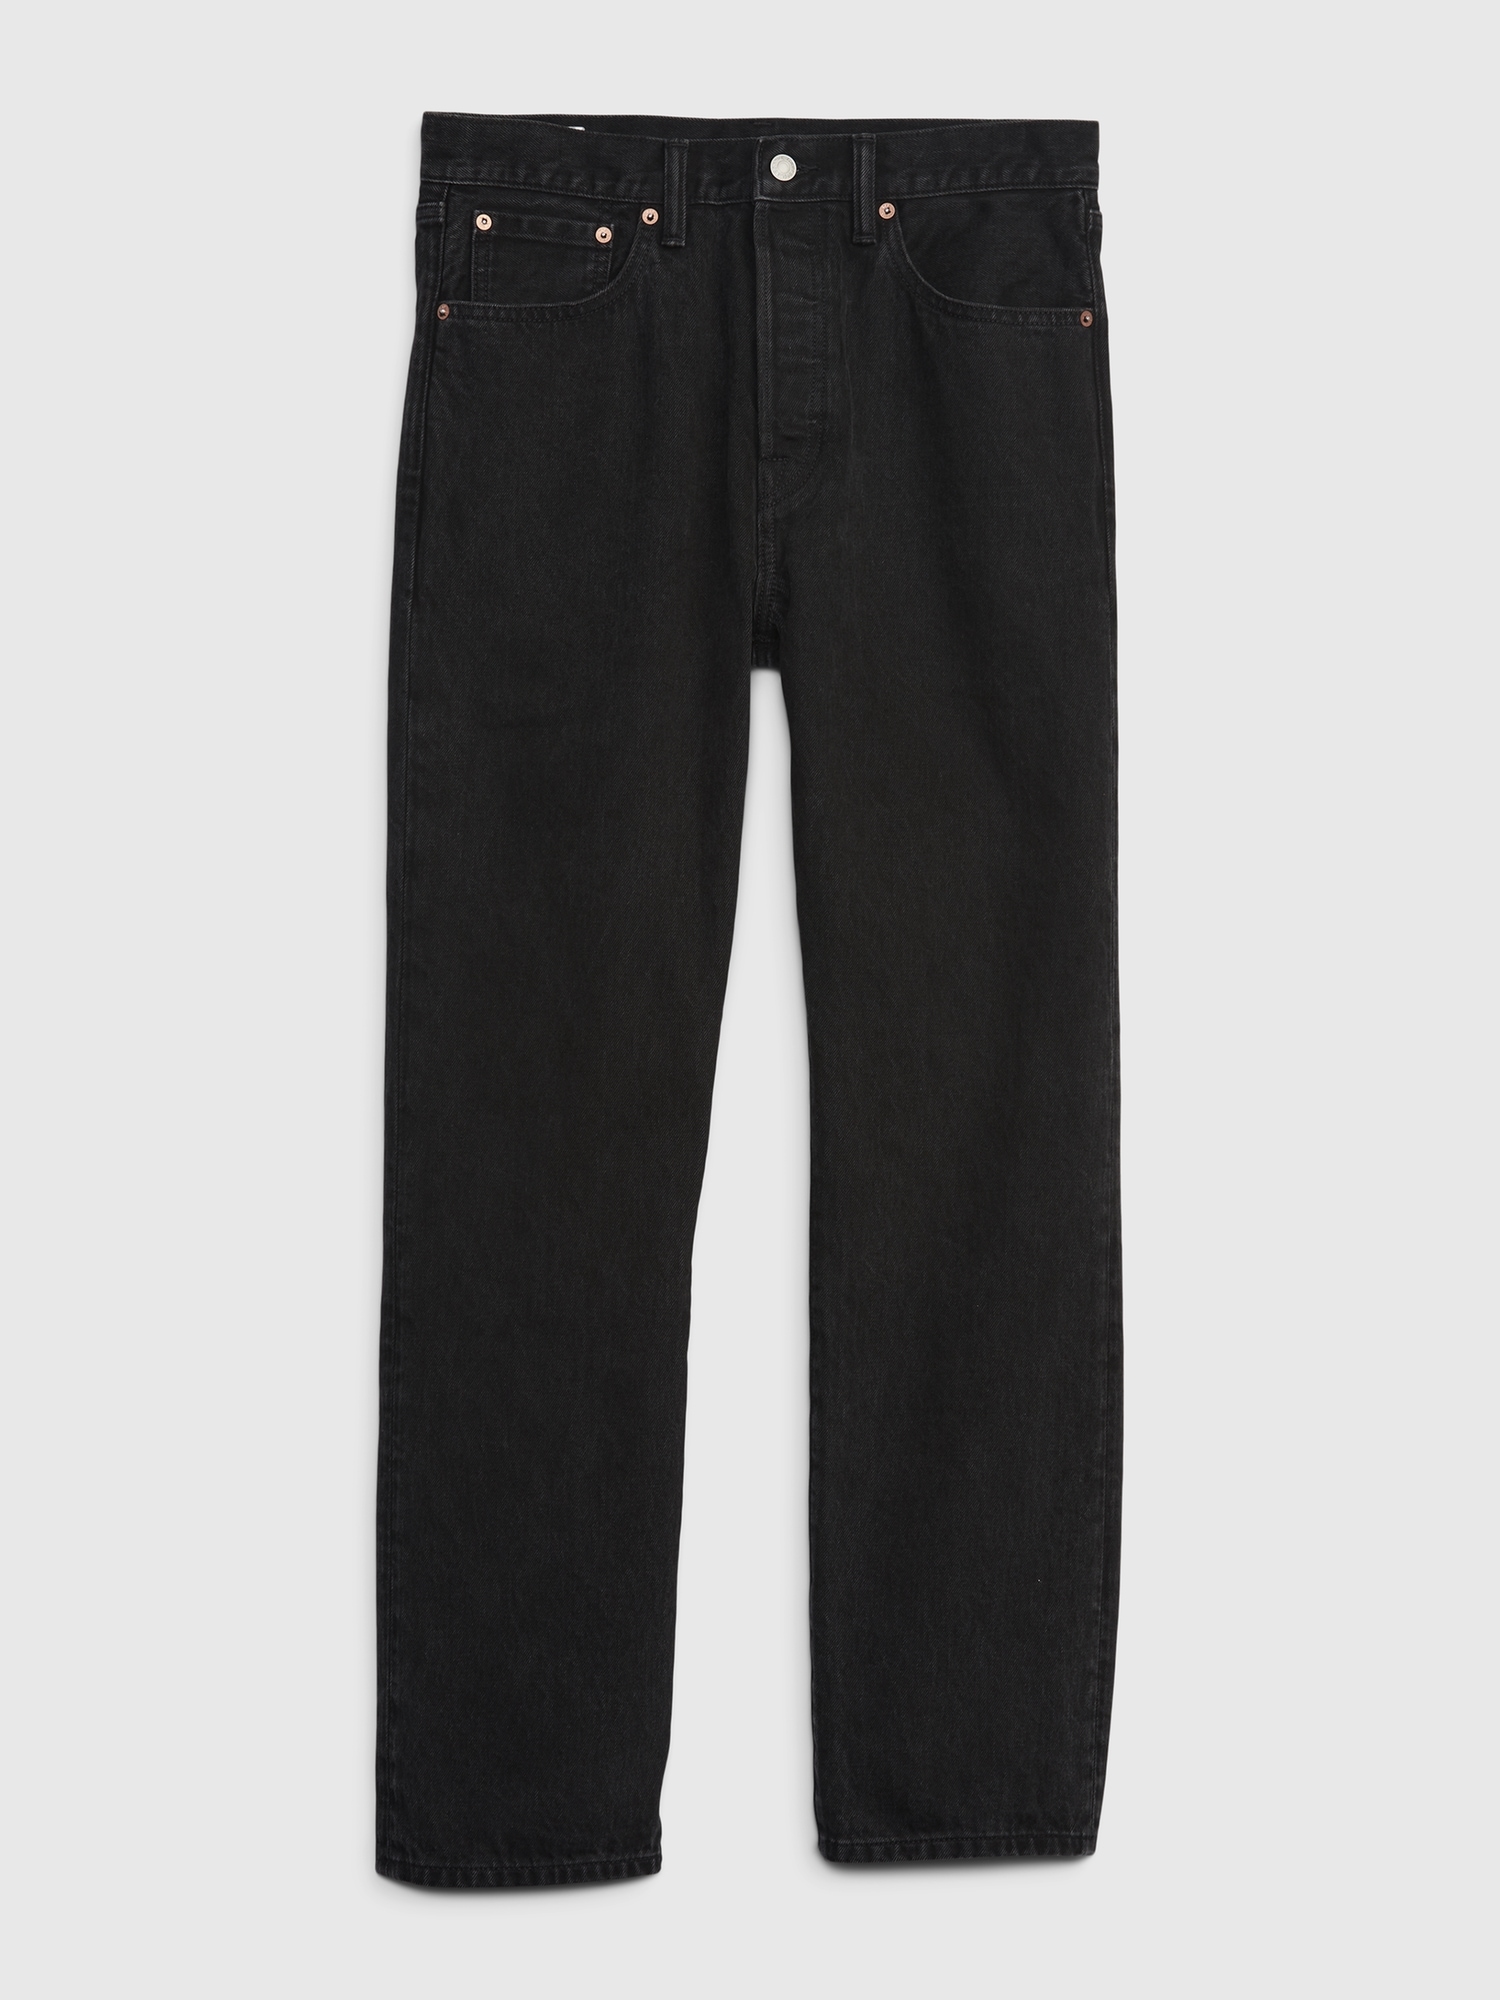 Levis 501 Original Fit Jeans Button Fly Straight Leg 100% Cotton 100%  AUTHENTIC